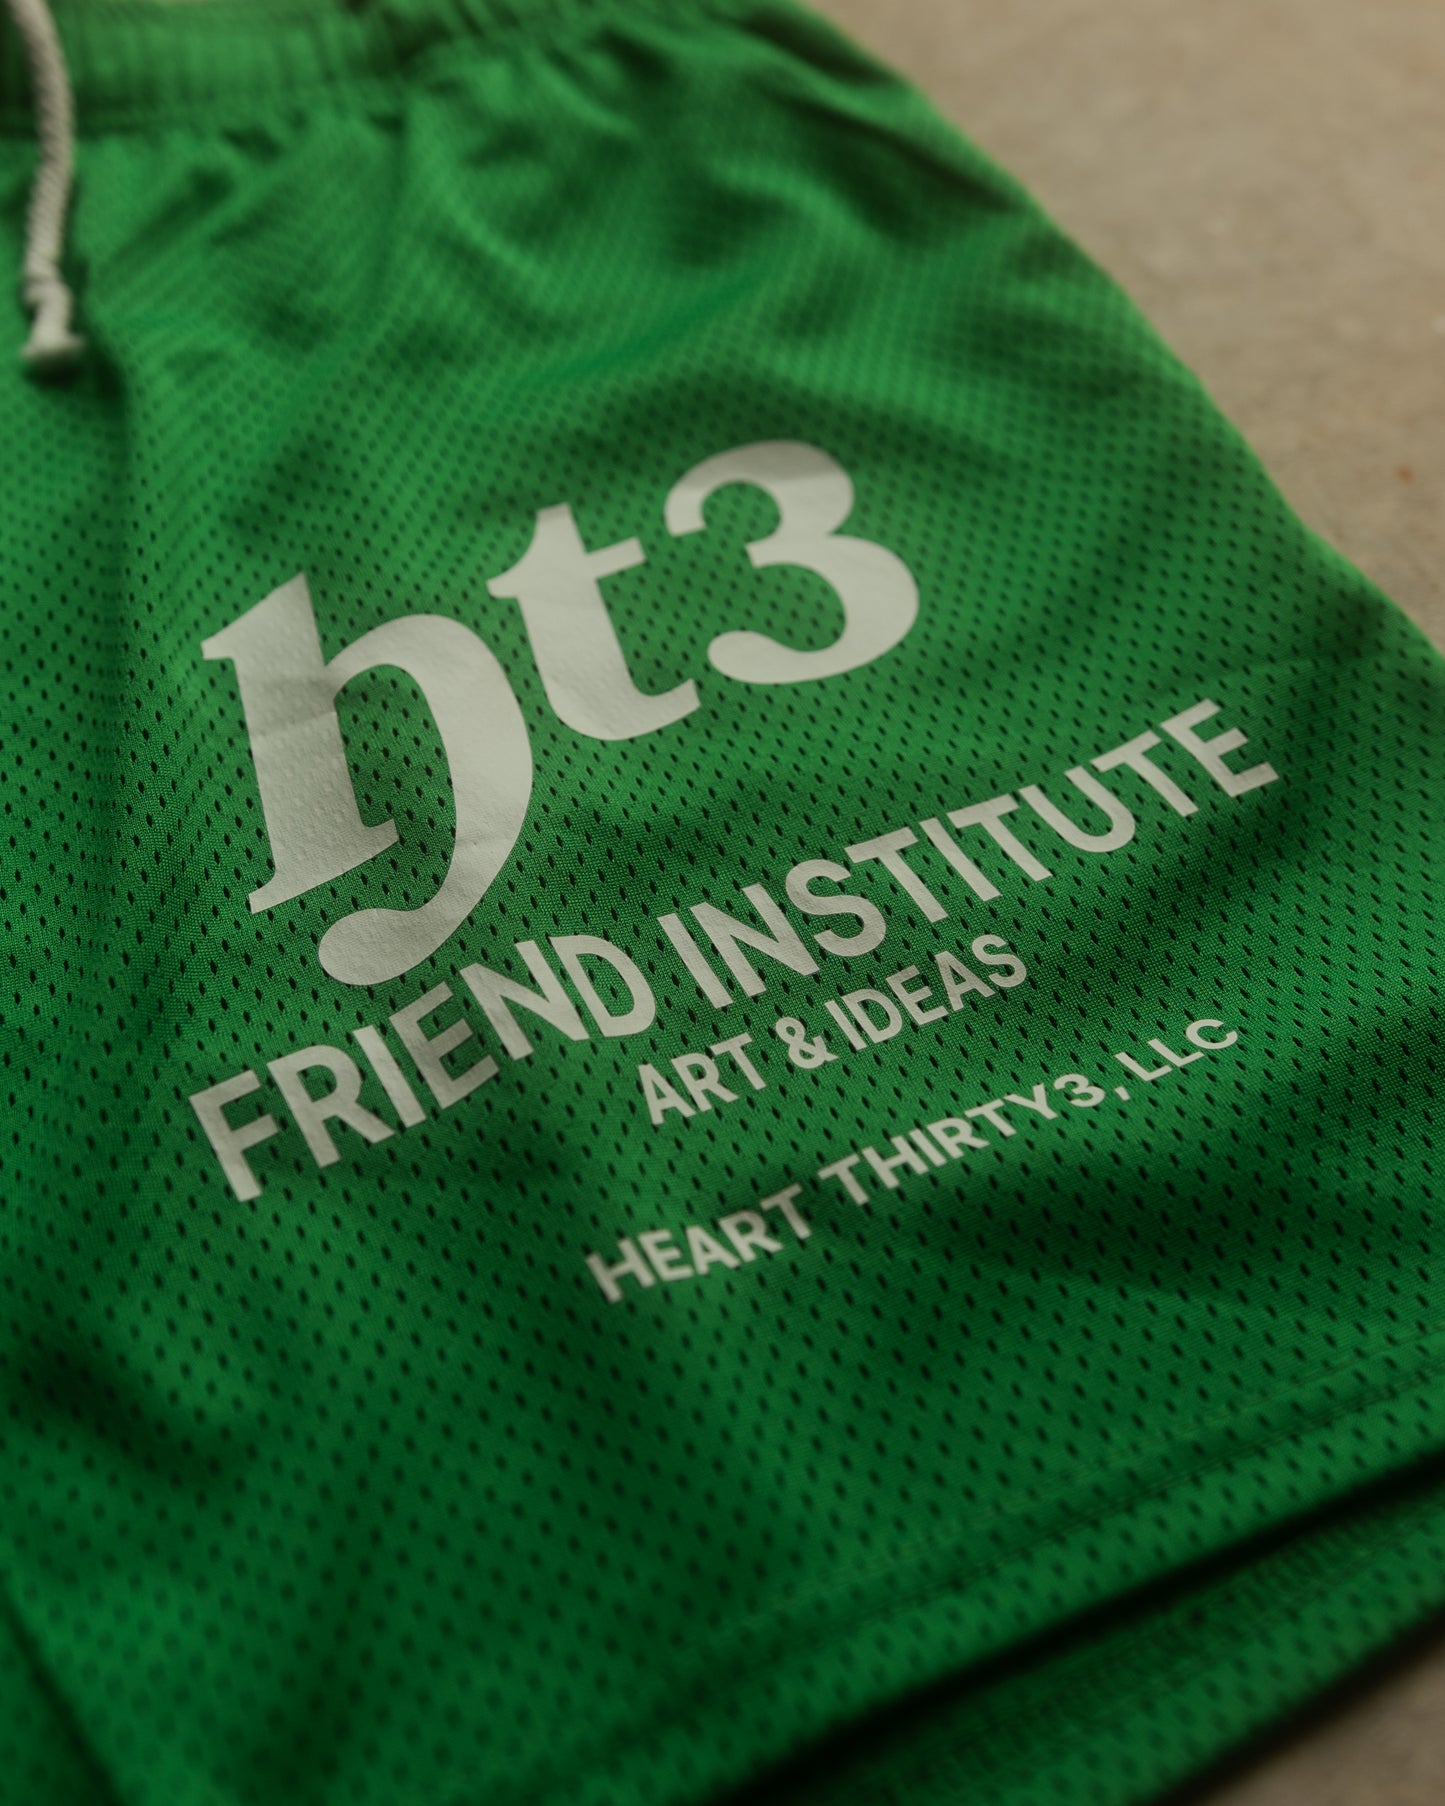 HT3 - Friend Institute Shorts